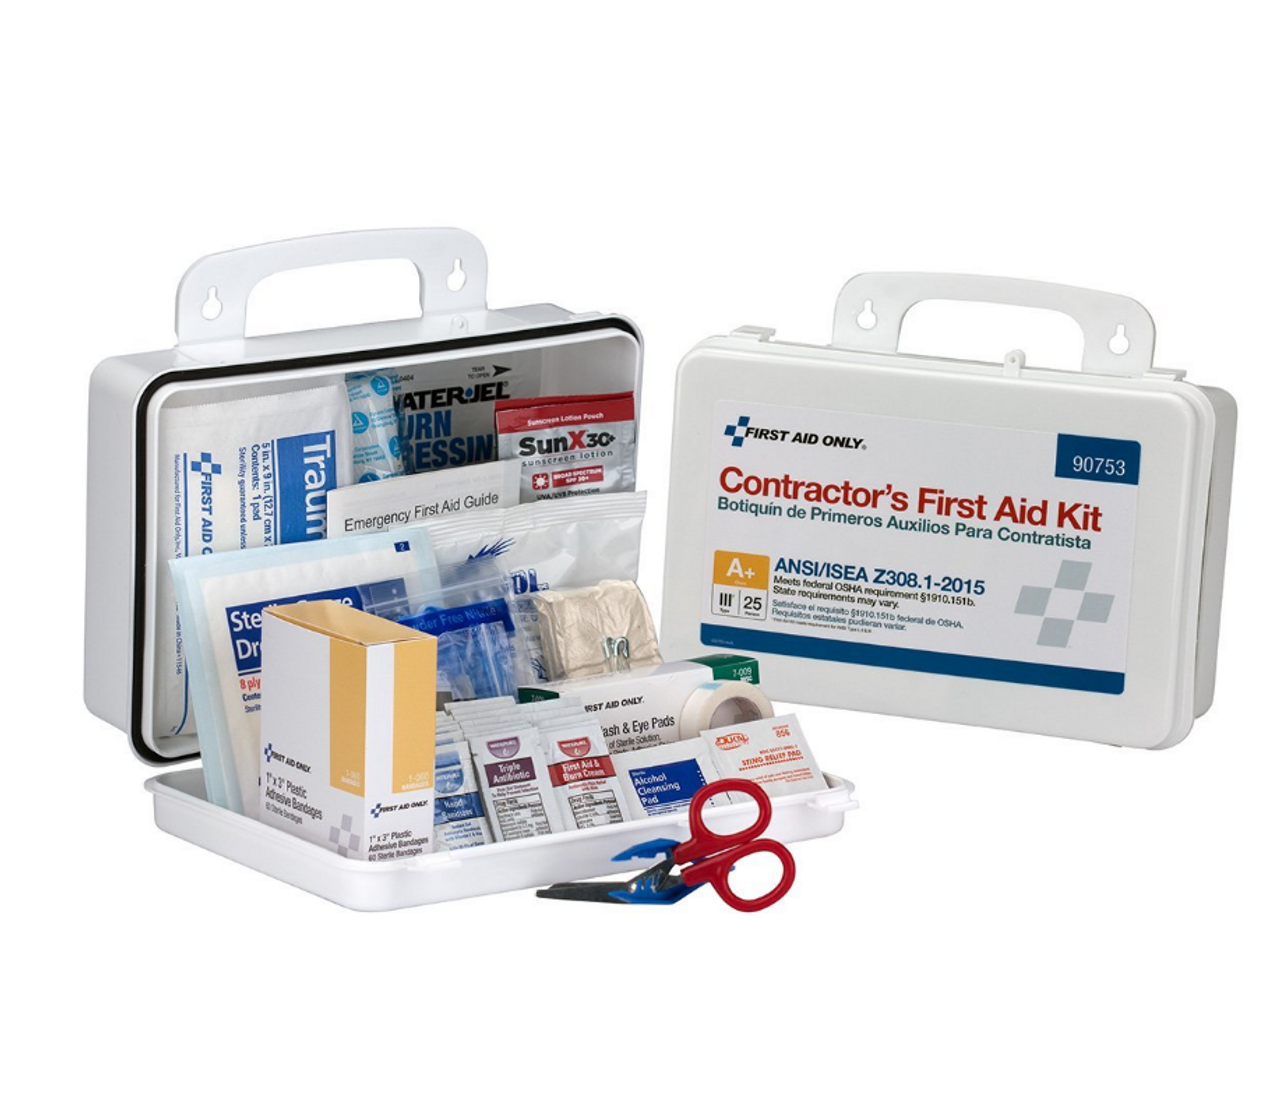 First Aid Kit - A. V. Hospital